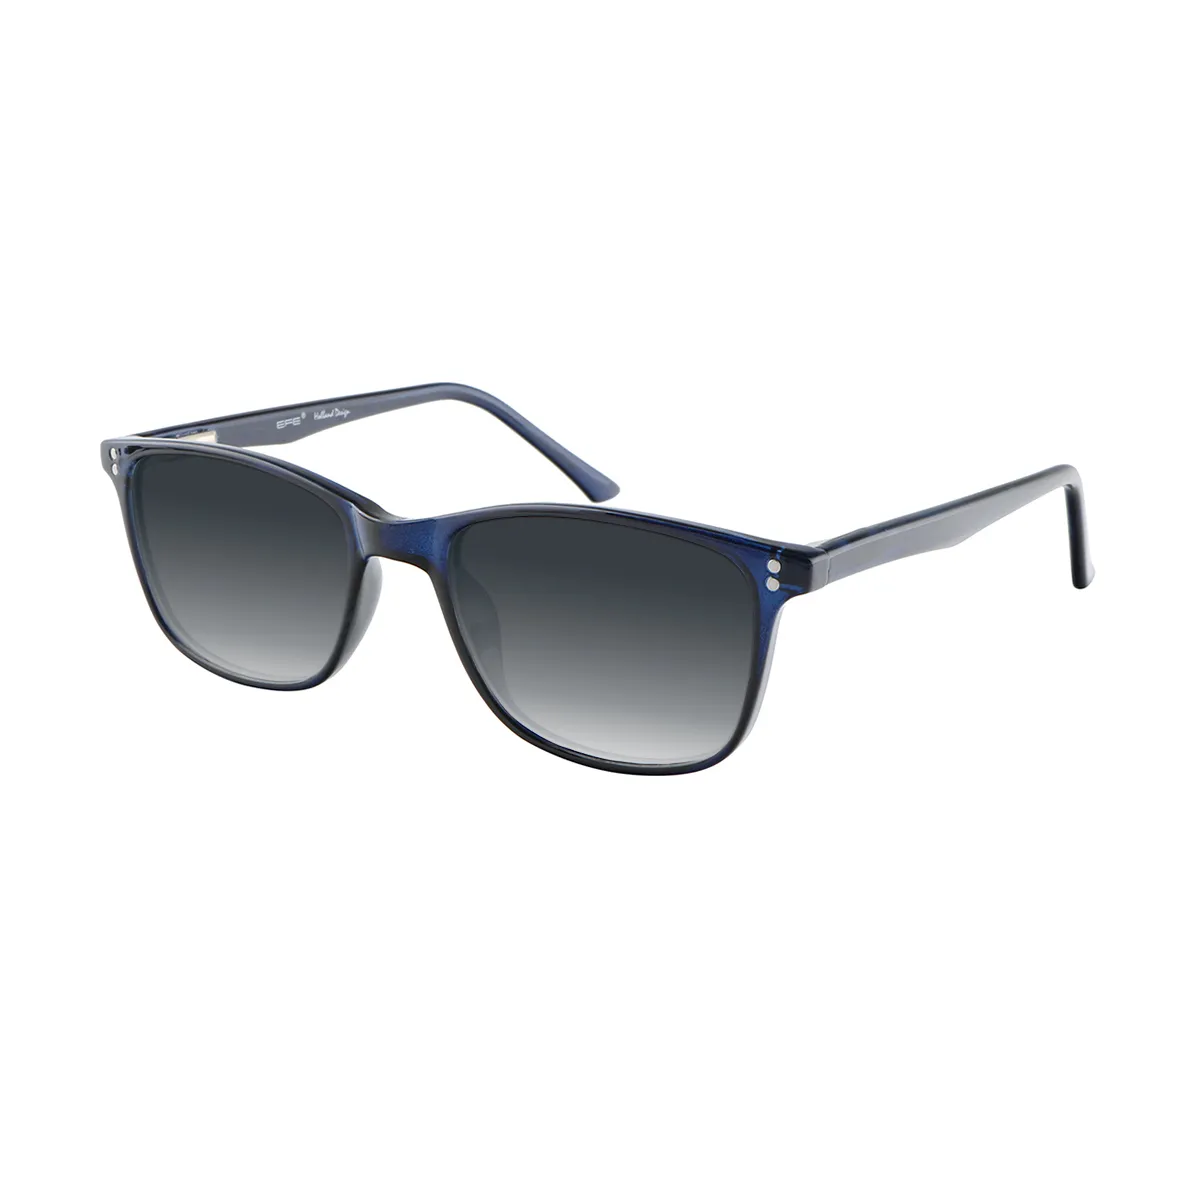 Dutton - Square Blue Sunglasses for Men & Women